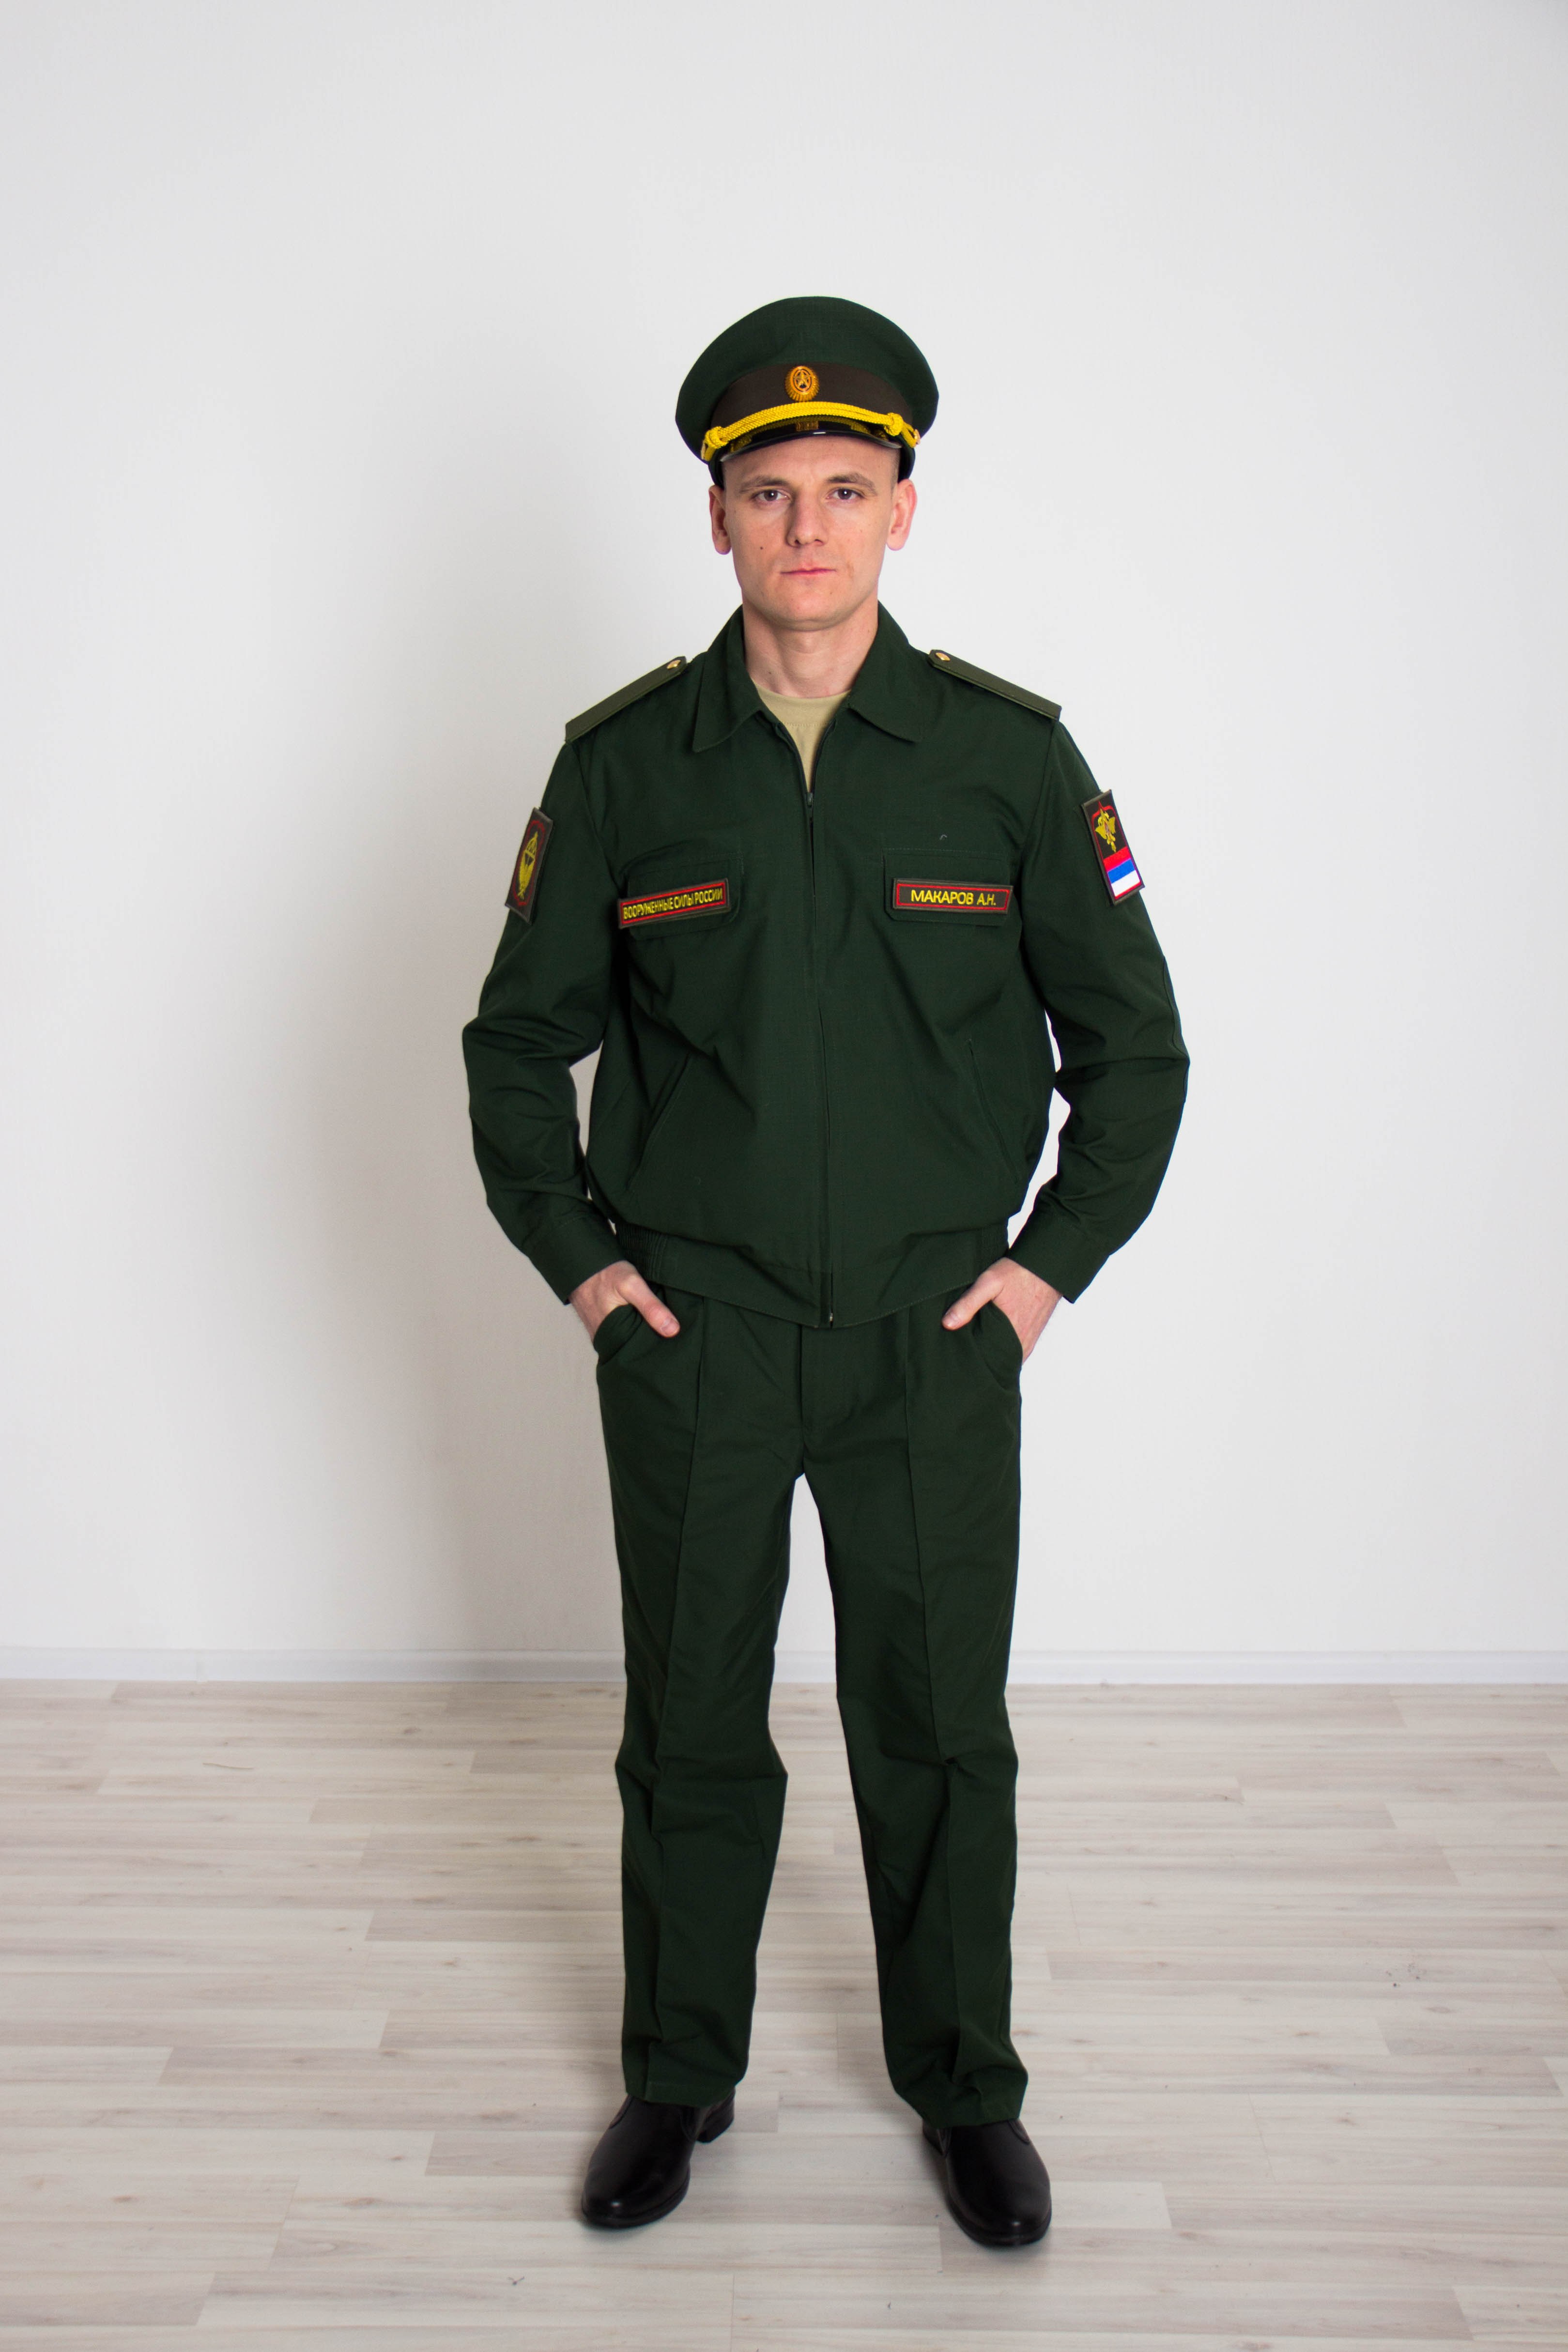 Повседневная форма одежды офицеров российской армии